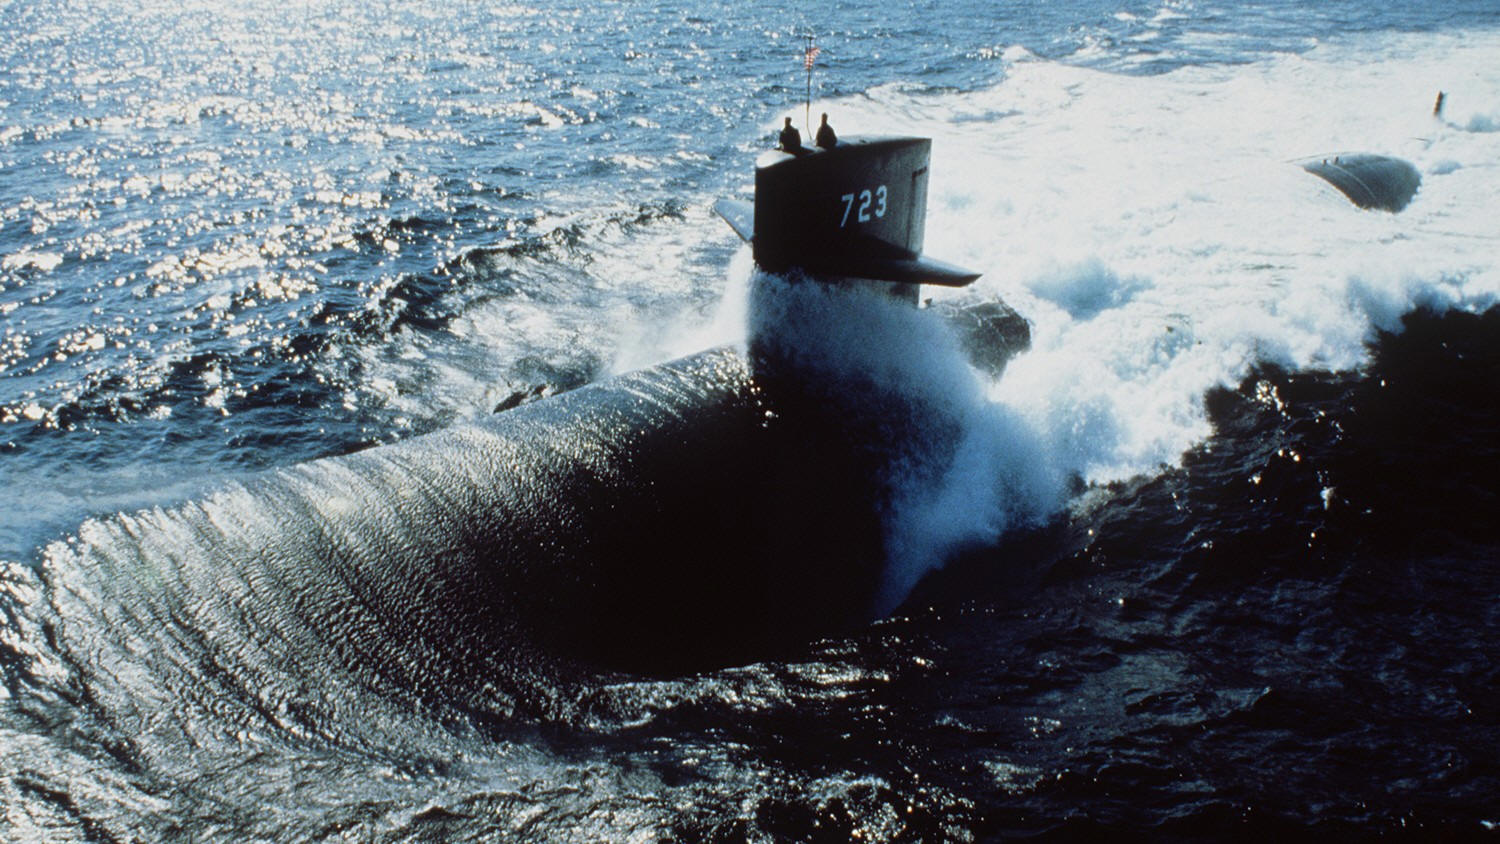 ssn-723 uss oklahoma city los angeles class attack submarine